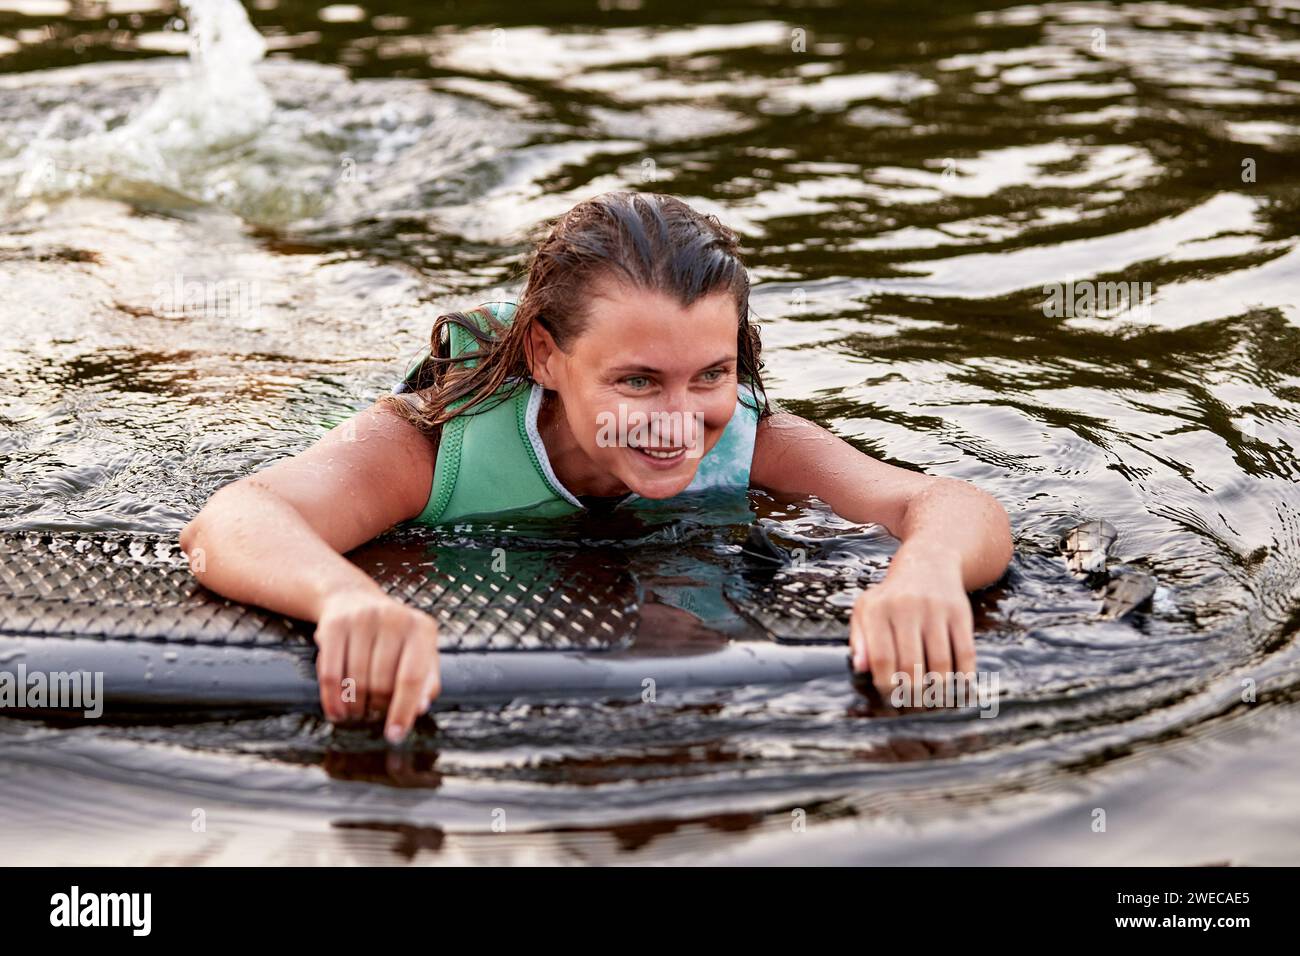 Jeune belle fille sportive dans un gilet de sauvetage vert nage dans l'eau avec un wakeboard dans ses mains. Happy sportswoman se prépare pour un wakebo raide Banque D'Images